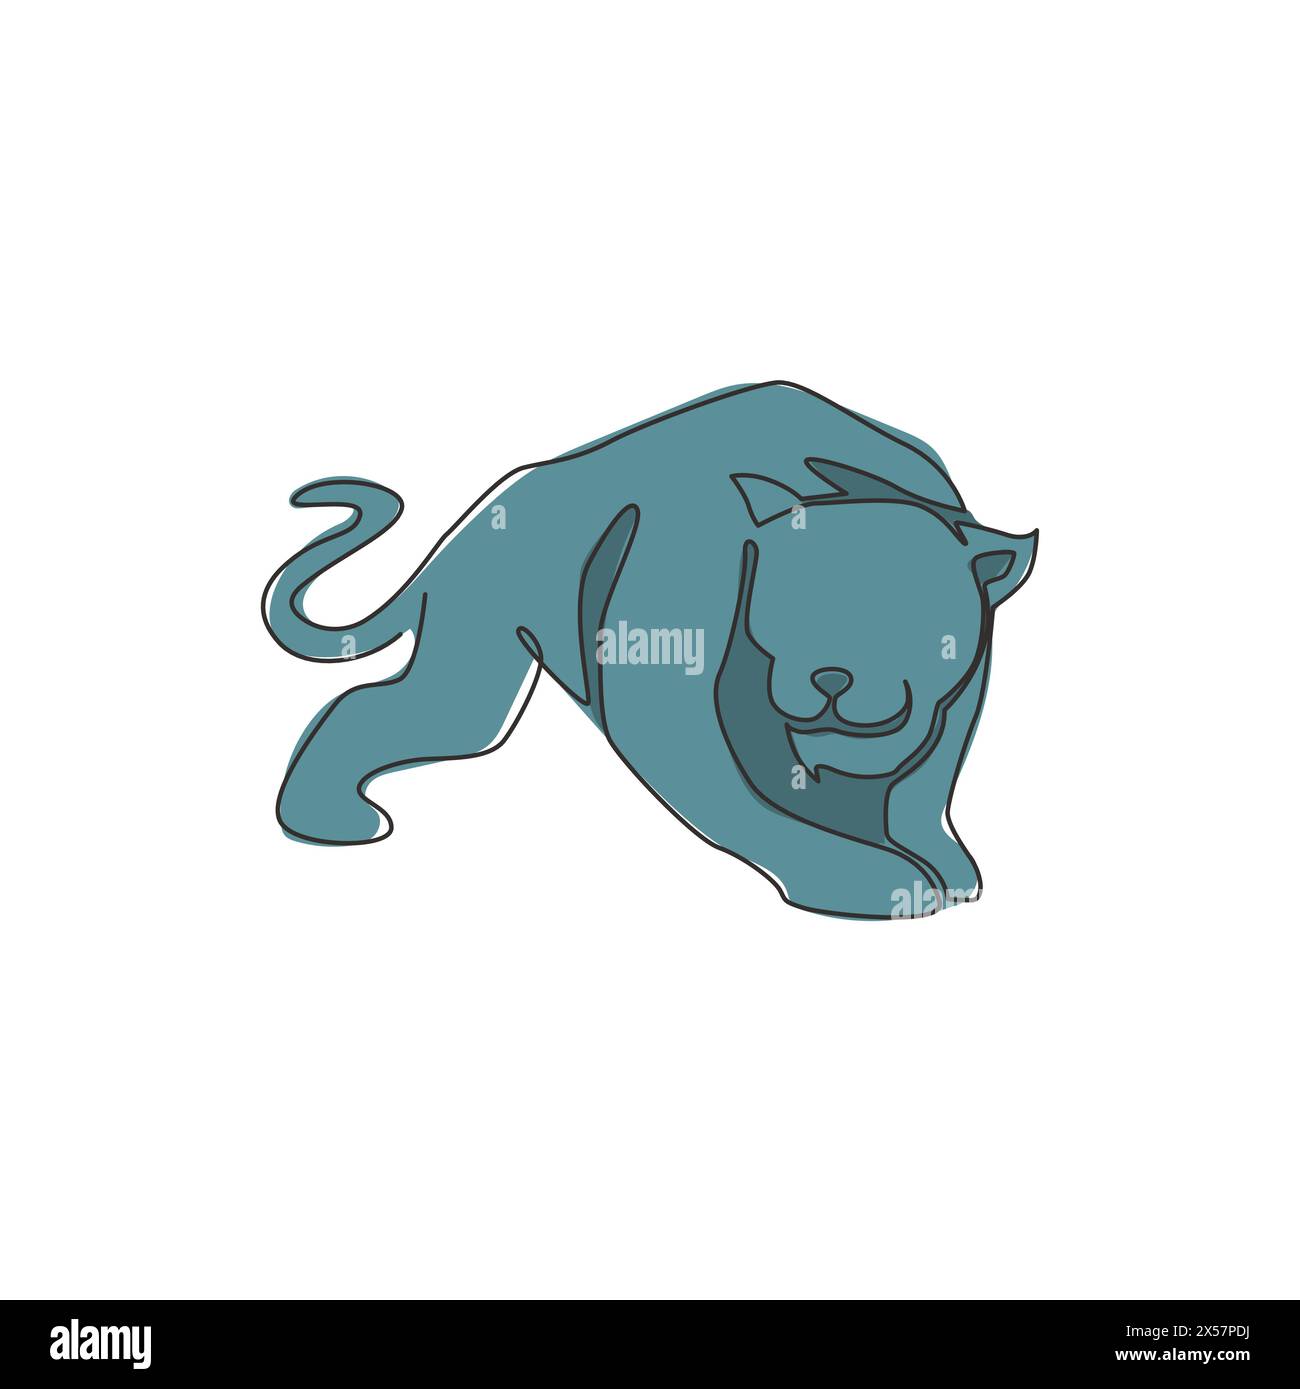 Un dessin simple ligne de léopard sauvage pour l'identité de logo d'entreprise. Concept fort de mascotte d'animal mammifère jaguar pour le parc national de conservation. Illustration de Vecteur